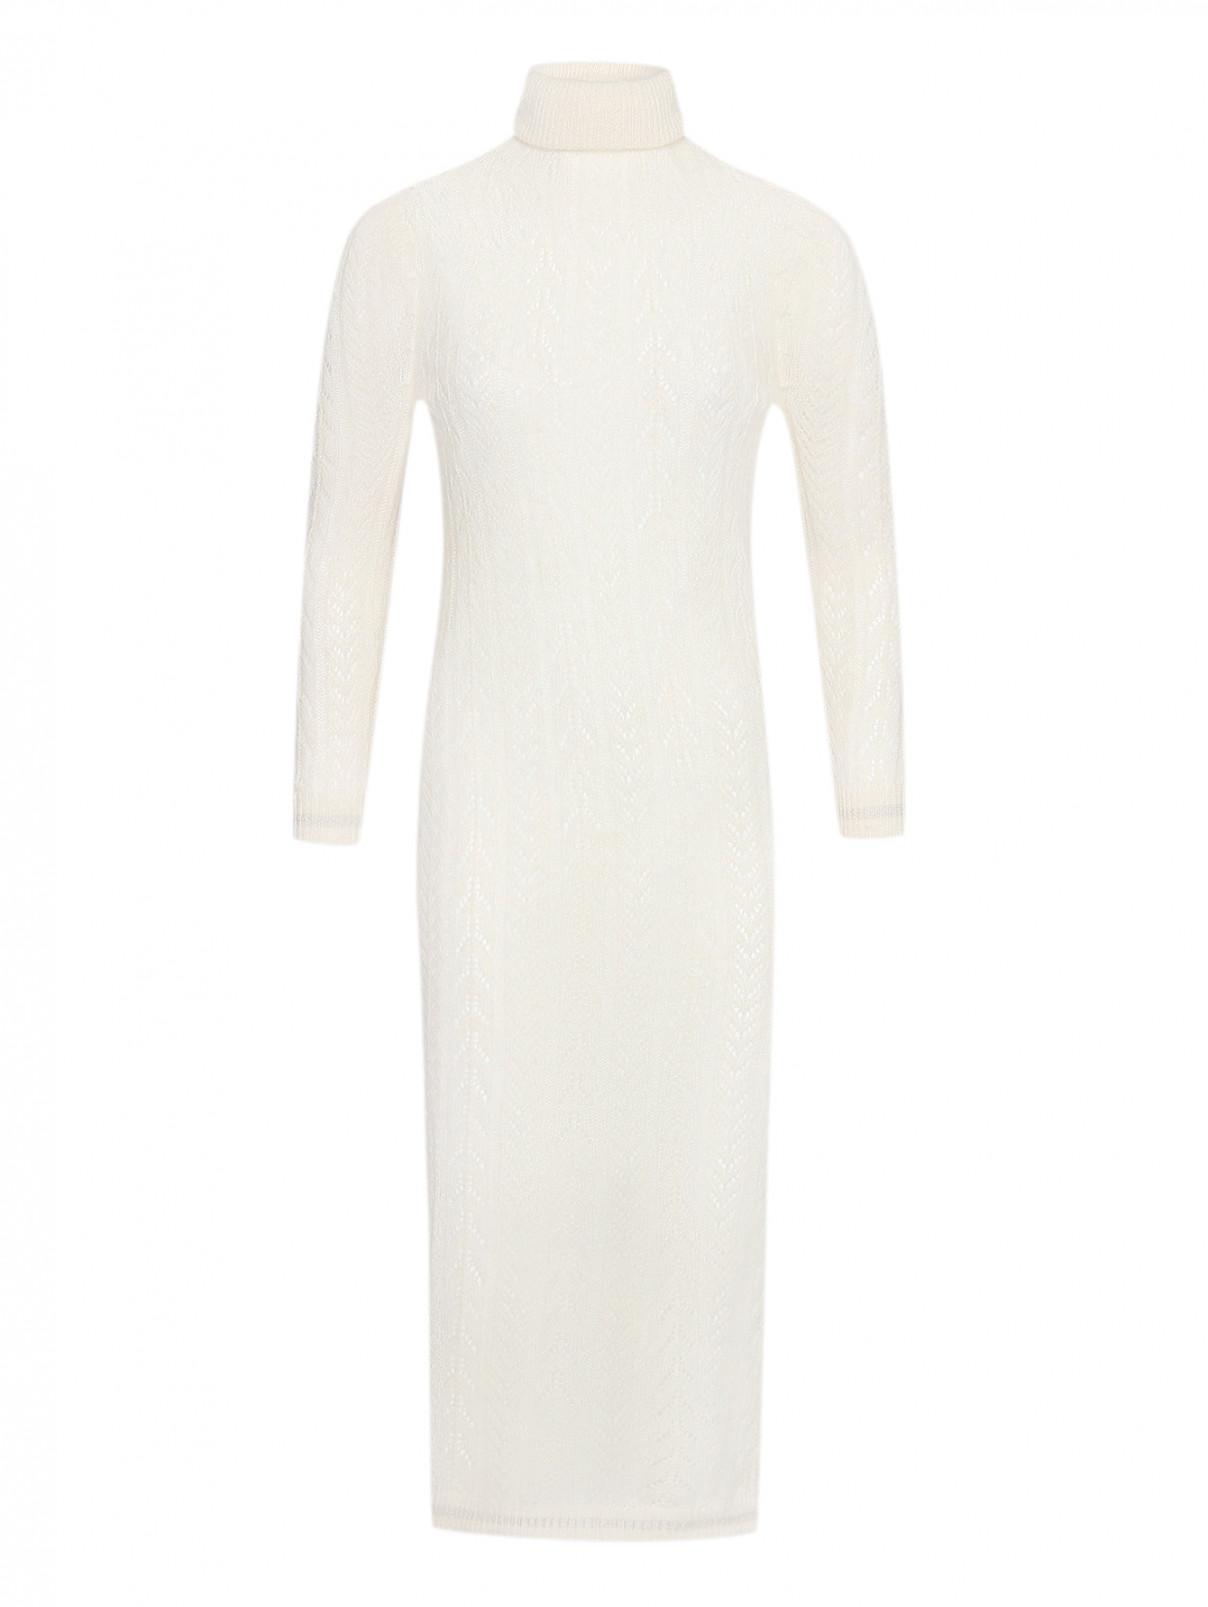 Прямое платье из шерсти альпаки Lorena Antoniazzi  –  Общий вид  – Цвет:  Белый